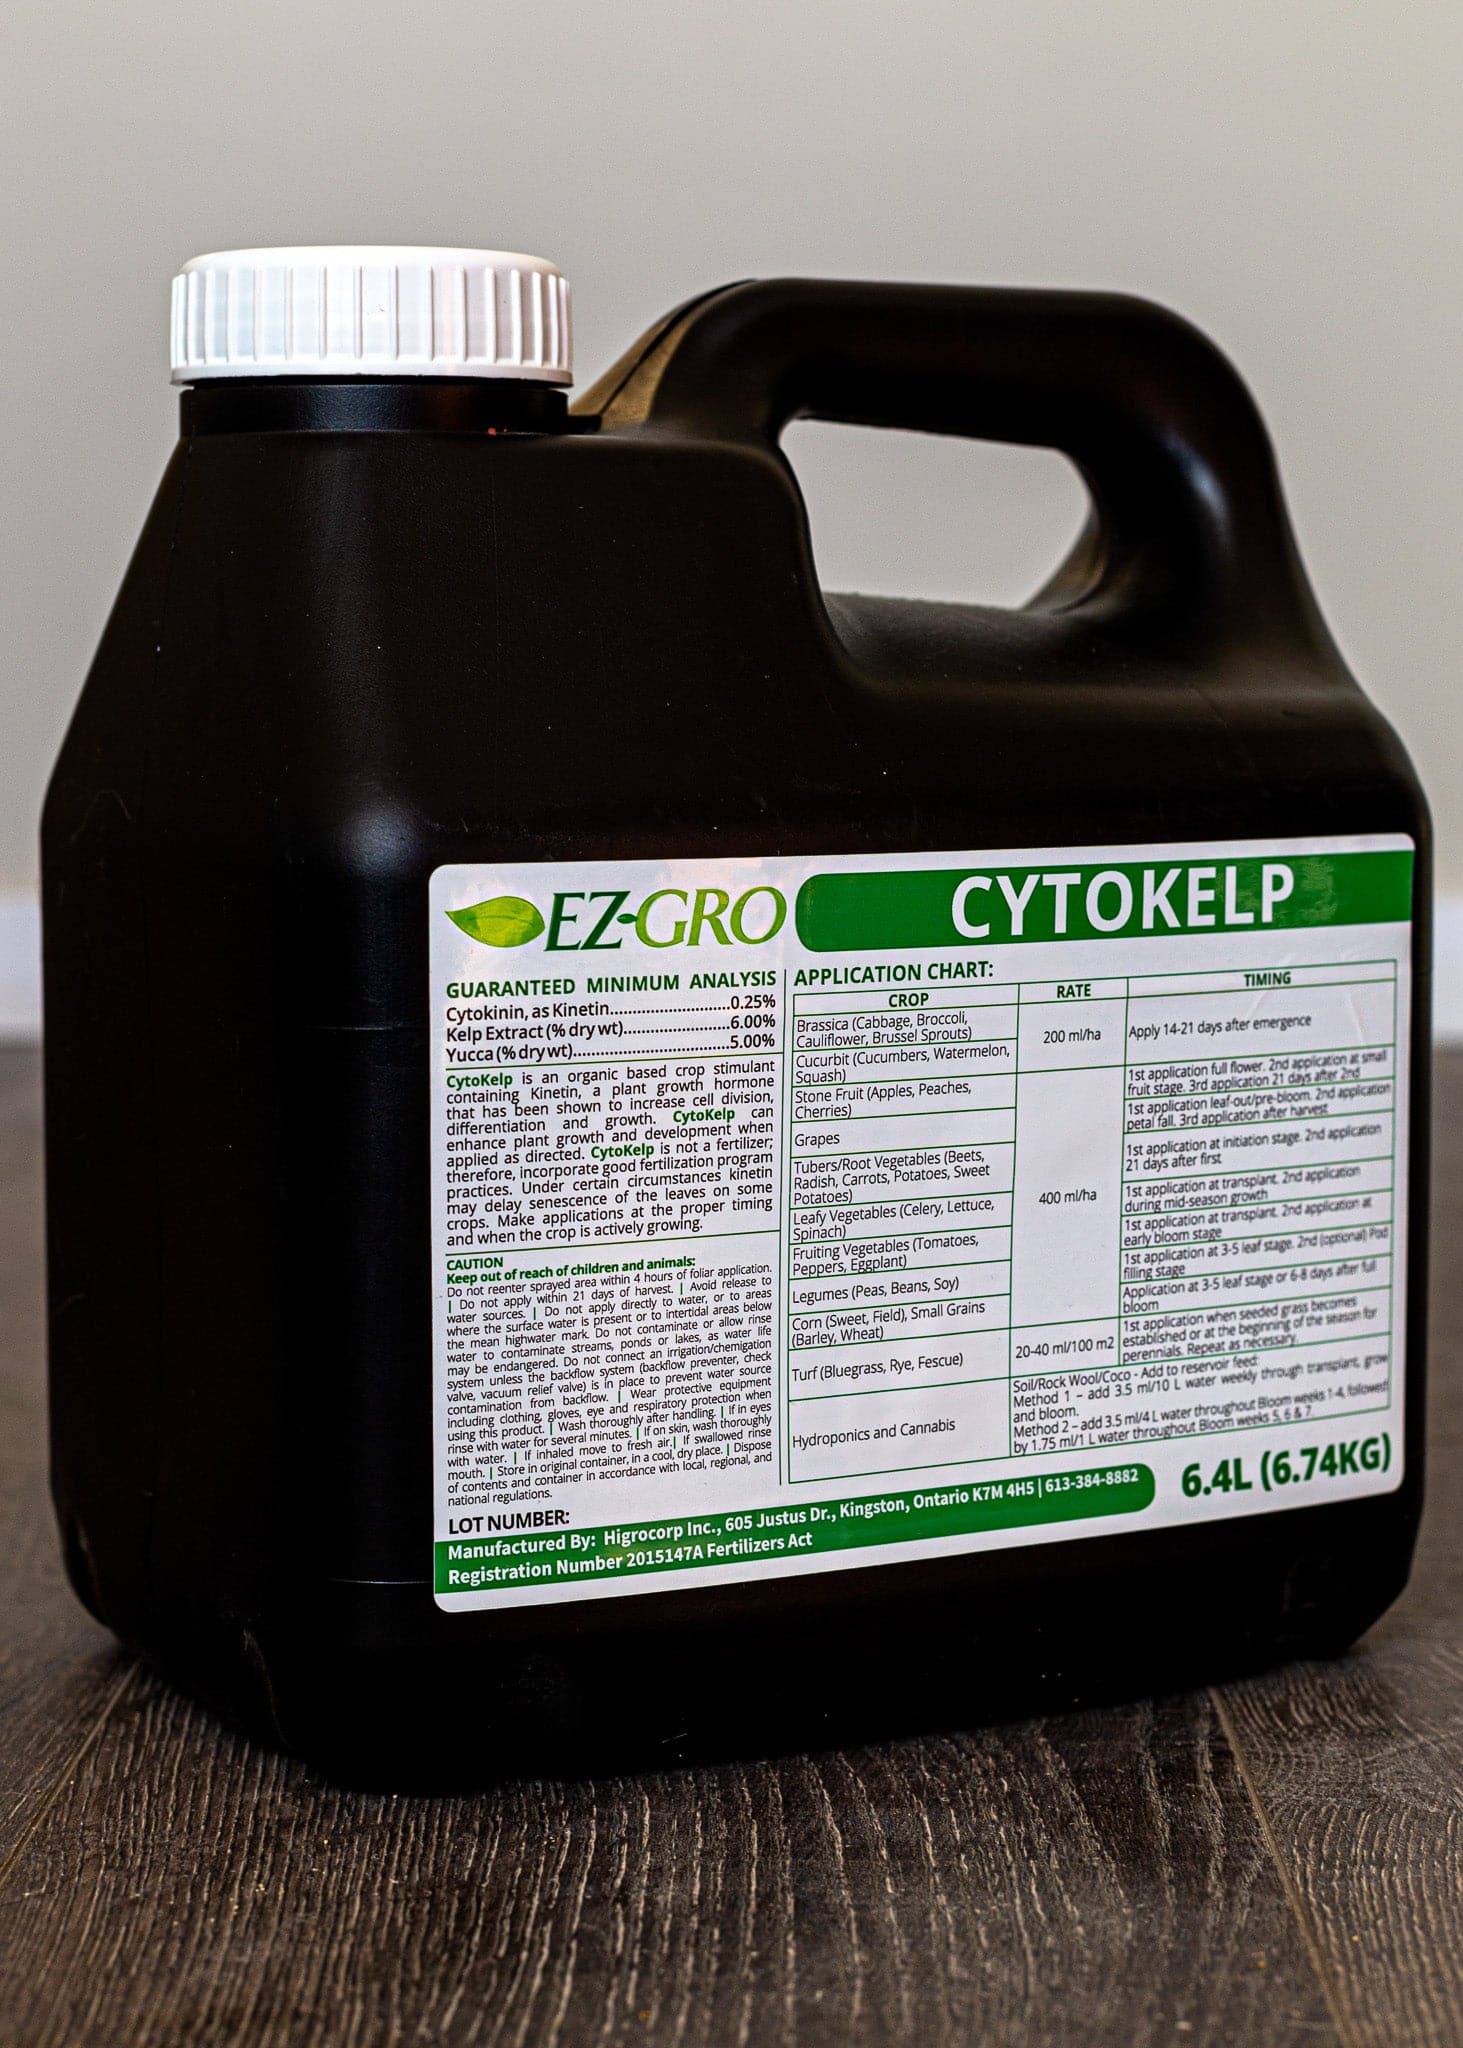 *Cytokelp - Certified Organic* - Growforge